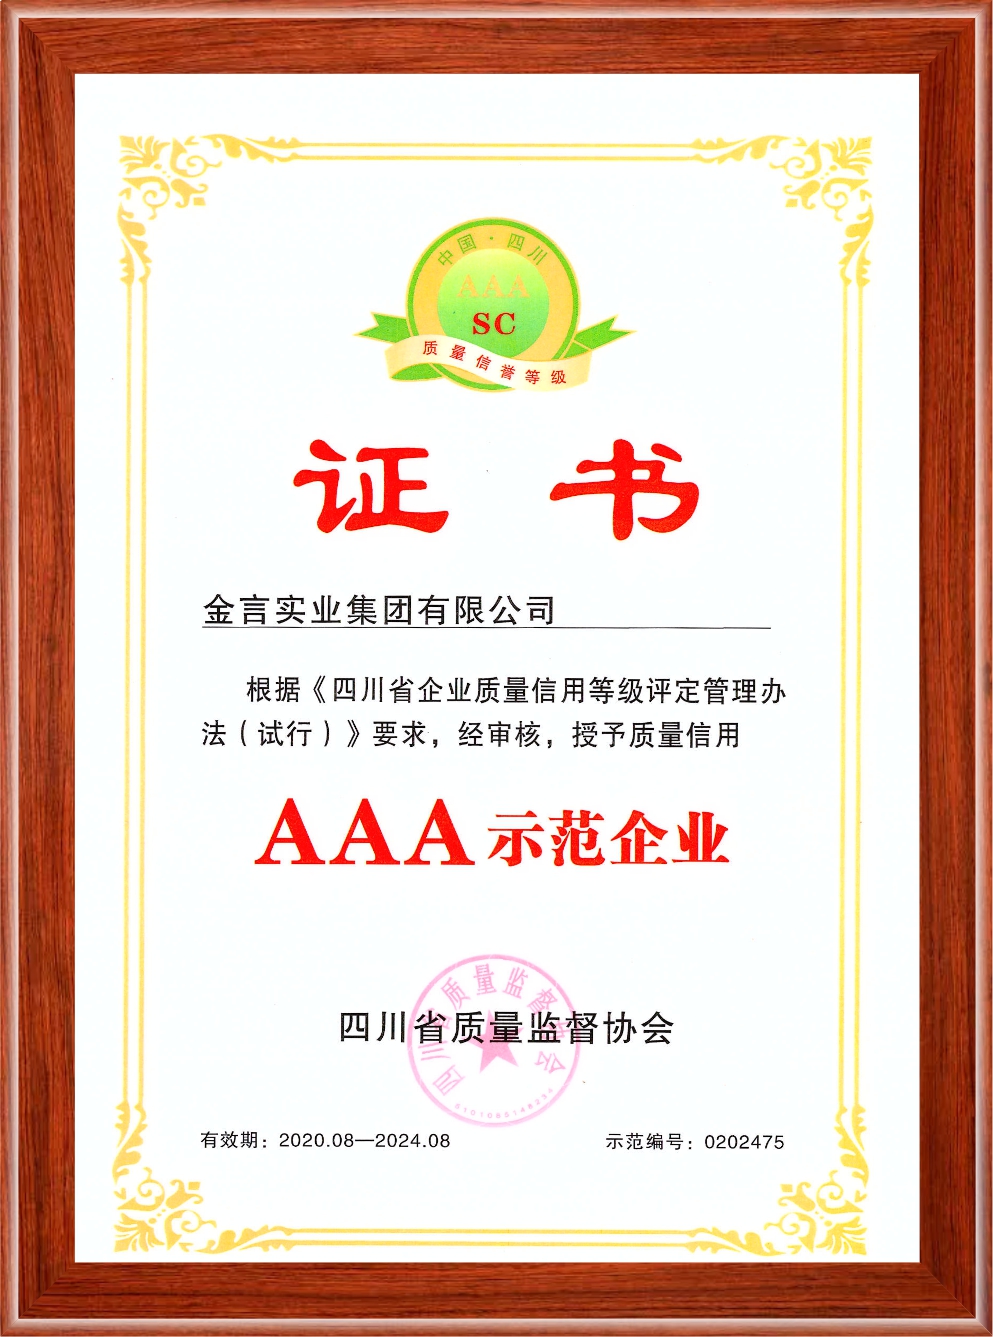 四川省企业质量信用AAA级树模企业